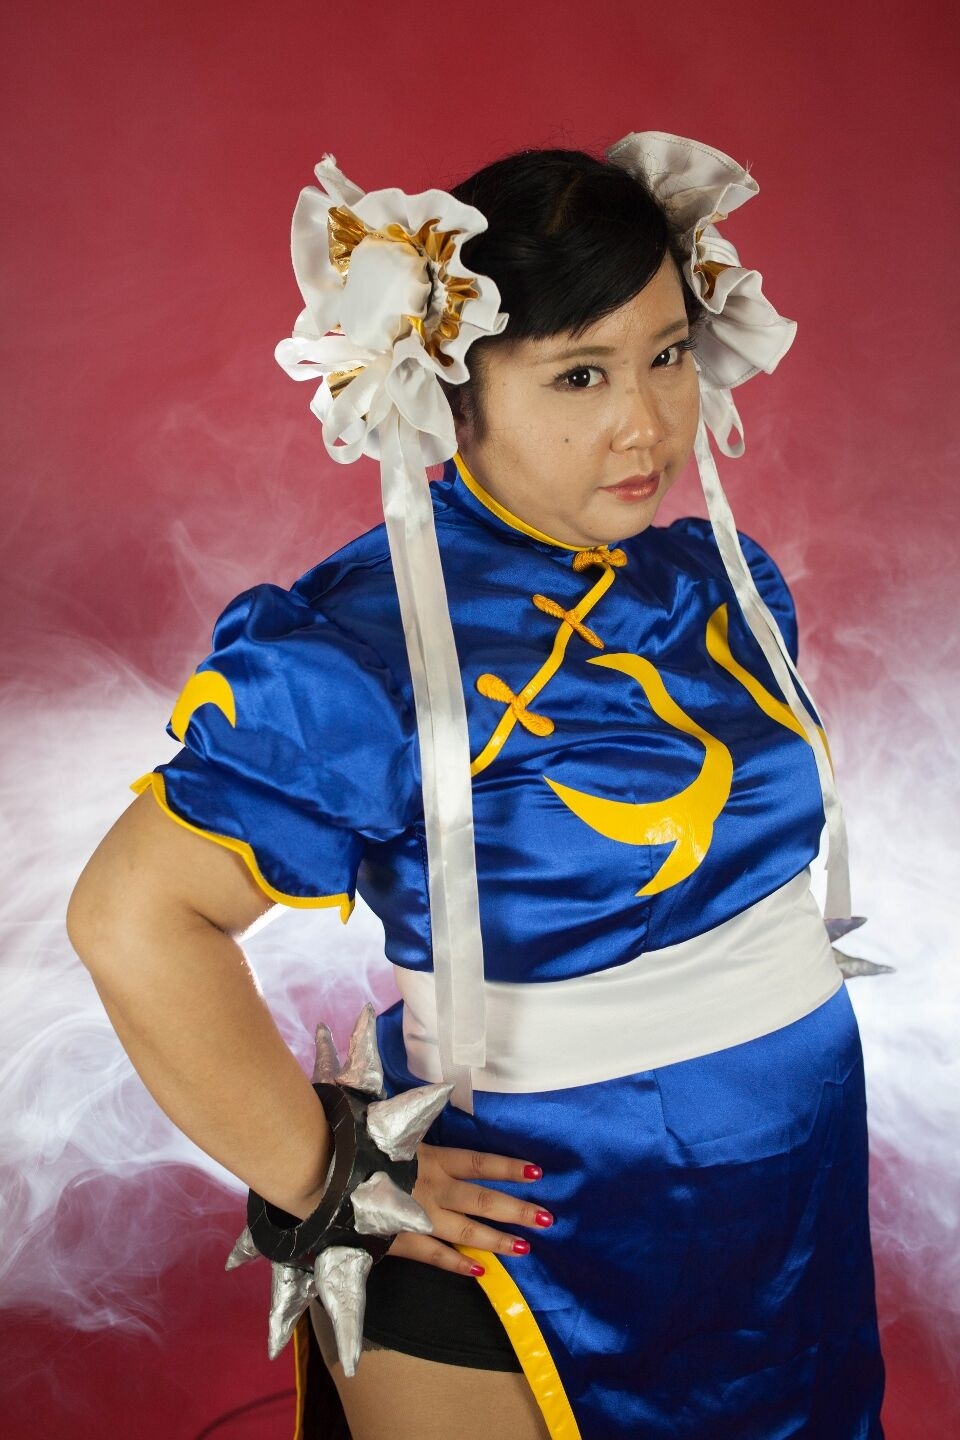 (渡辺さくらん) FIGHT FAT LADY (Sakuran Watanabe) (Mai Shiranui - Fatal Fury) (Chun-Li - Street Fighter) 8